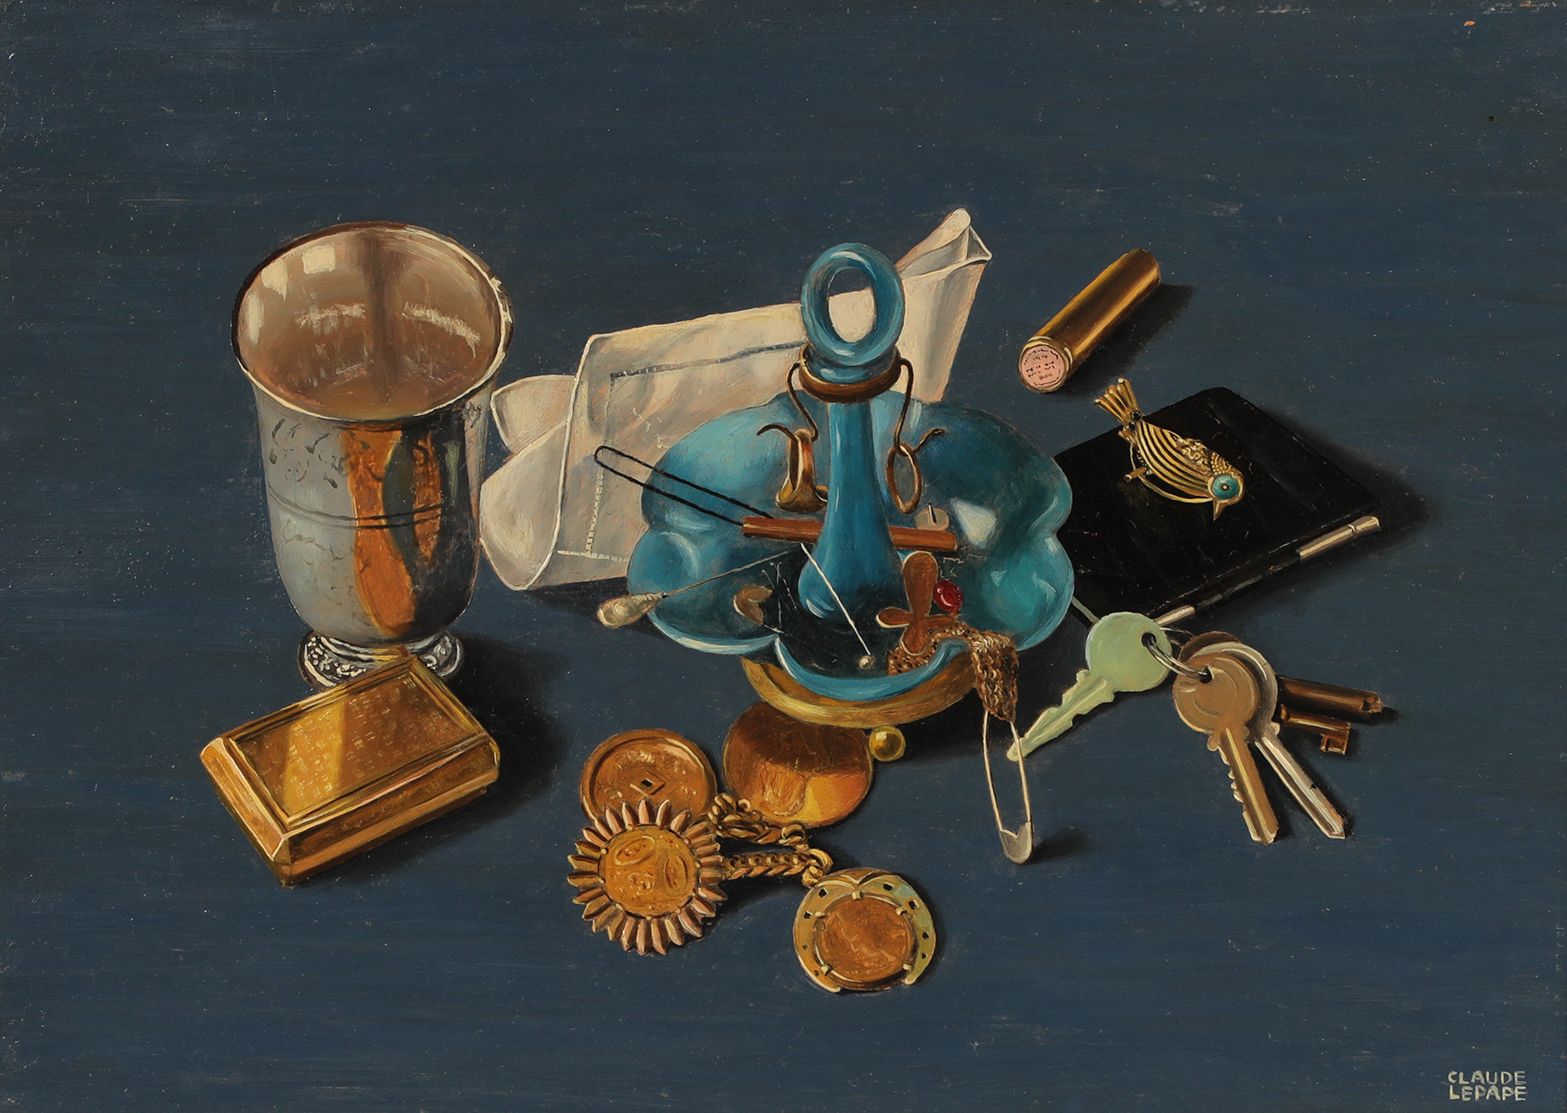 Null 克劳德-勒帕普(1913-1994)

钥匙的静物

右下角署名 "Isorel "的油画

38 x 65厘米